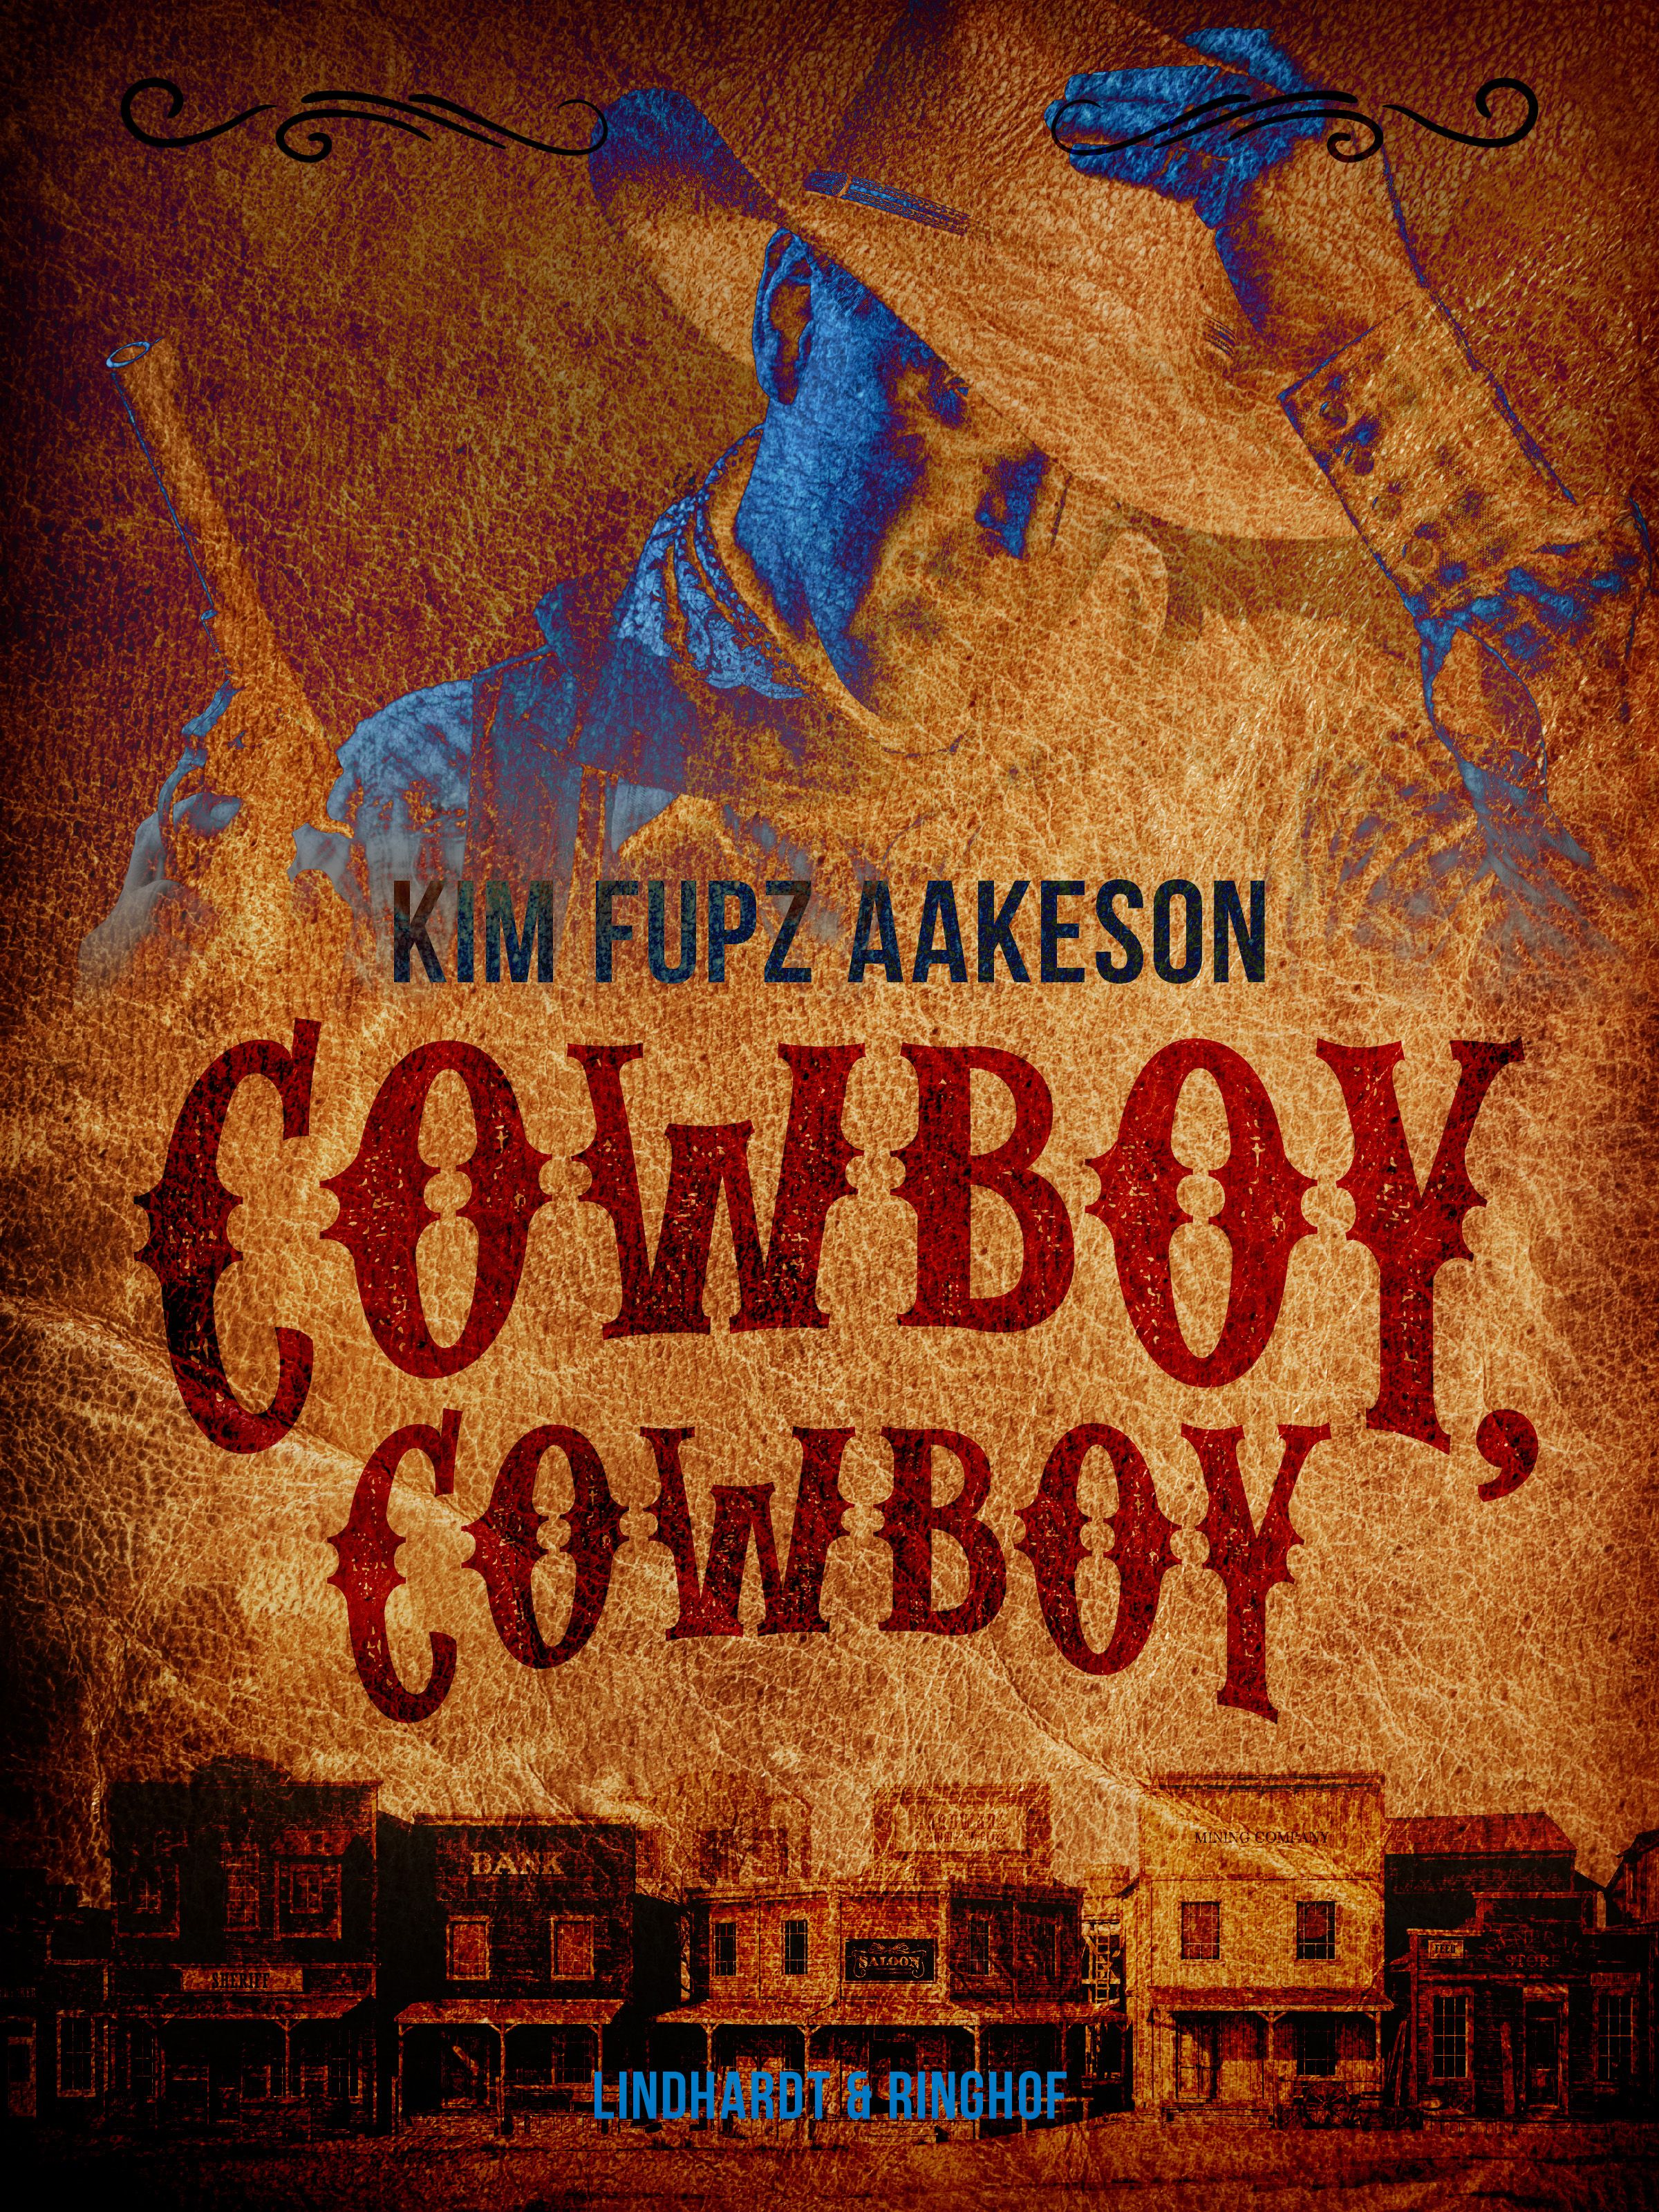 Cowboy, cowboy, e-bog af Kim Fupz Aakeson